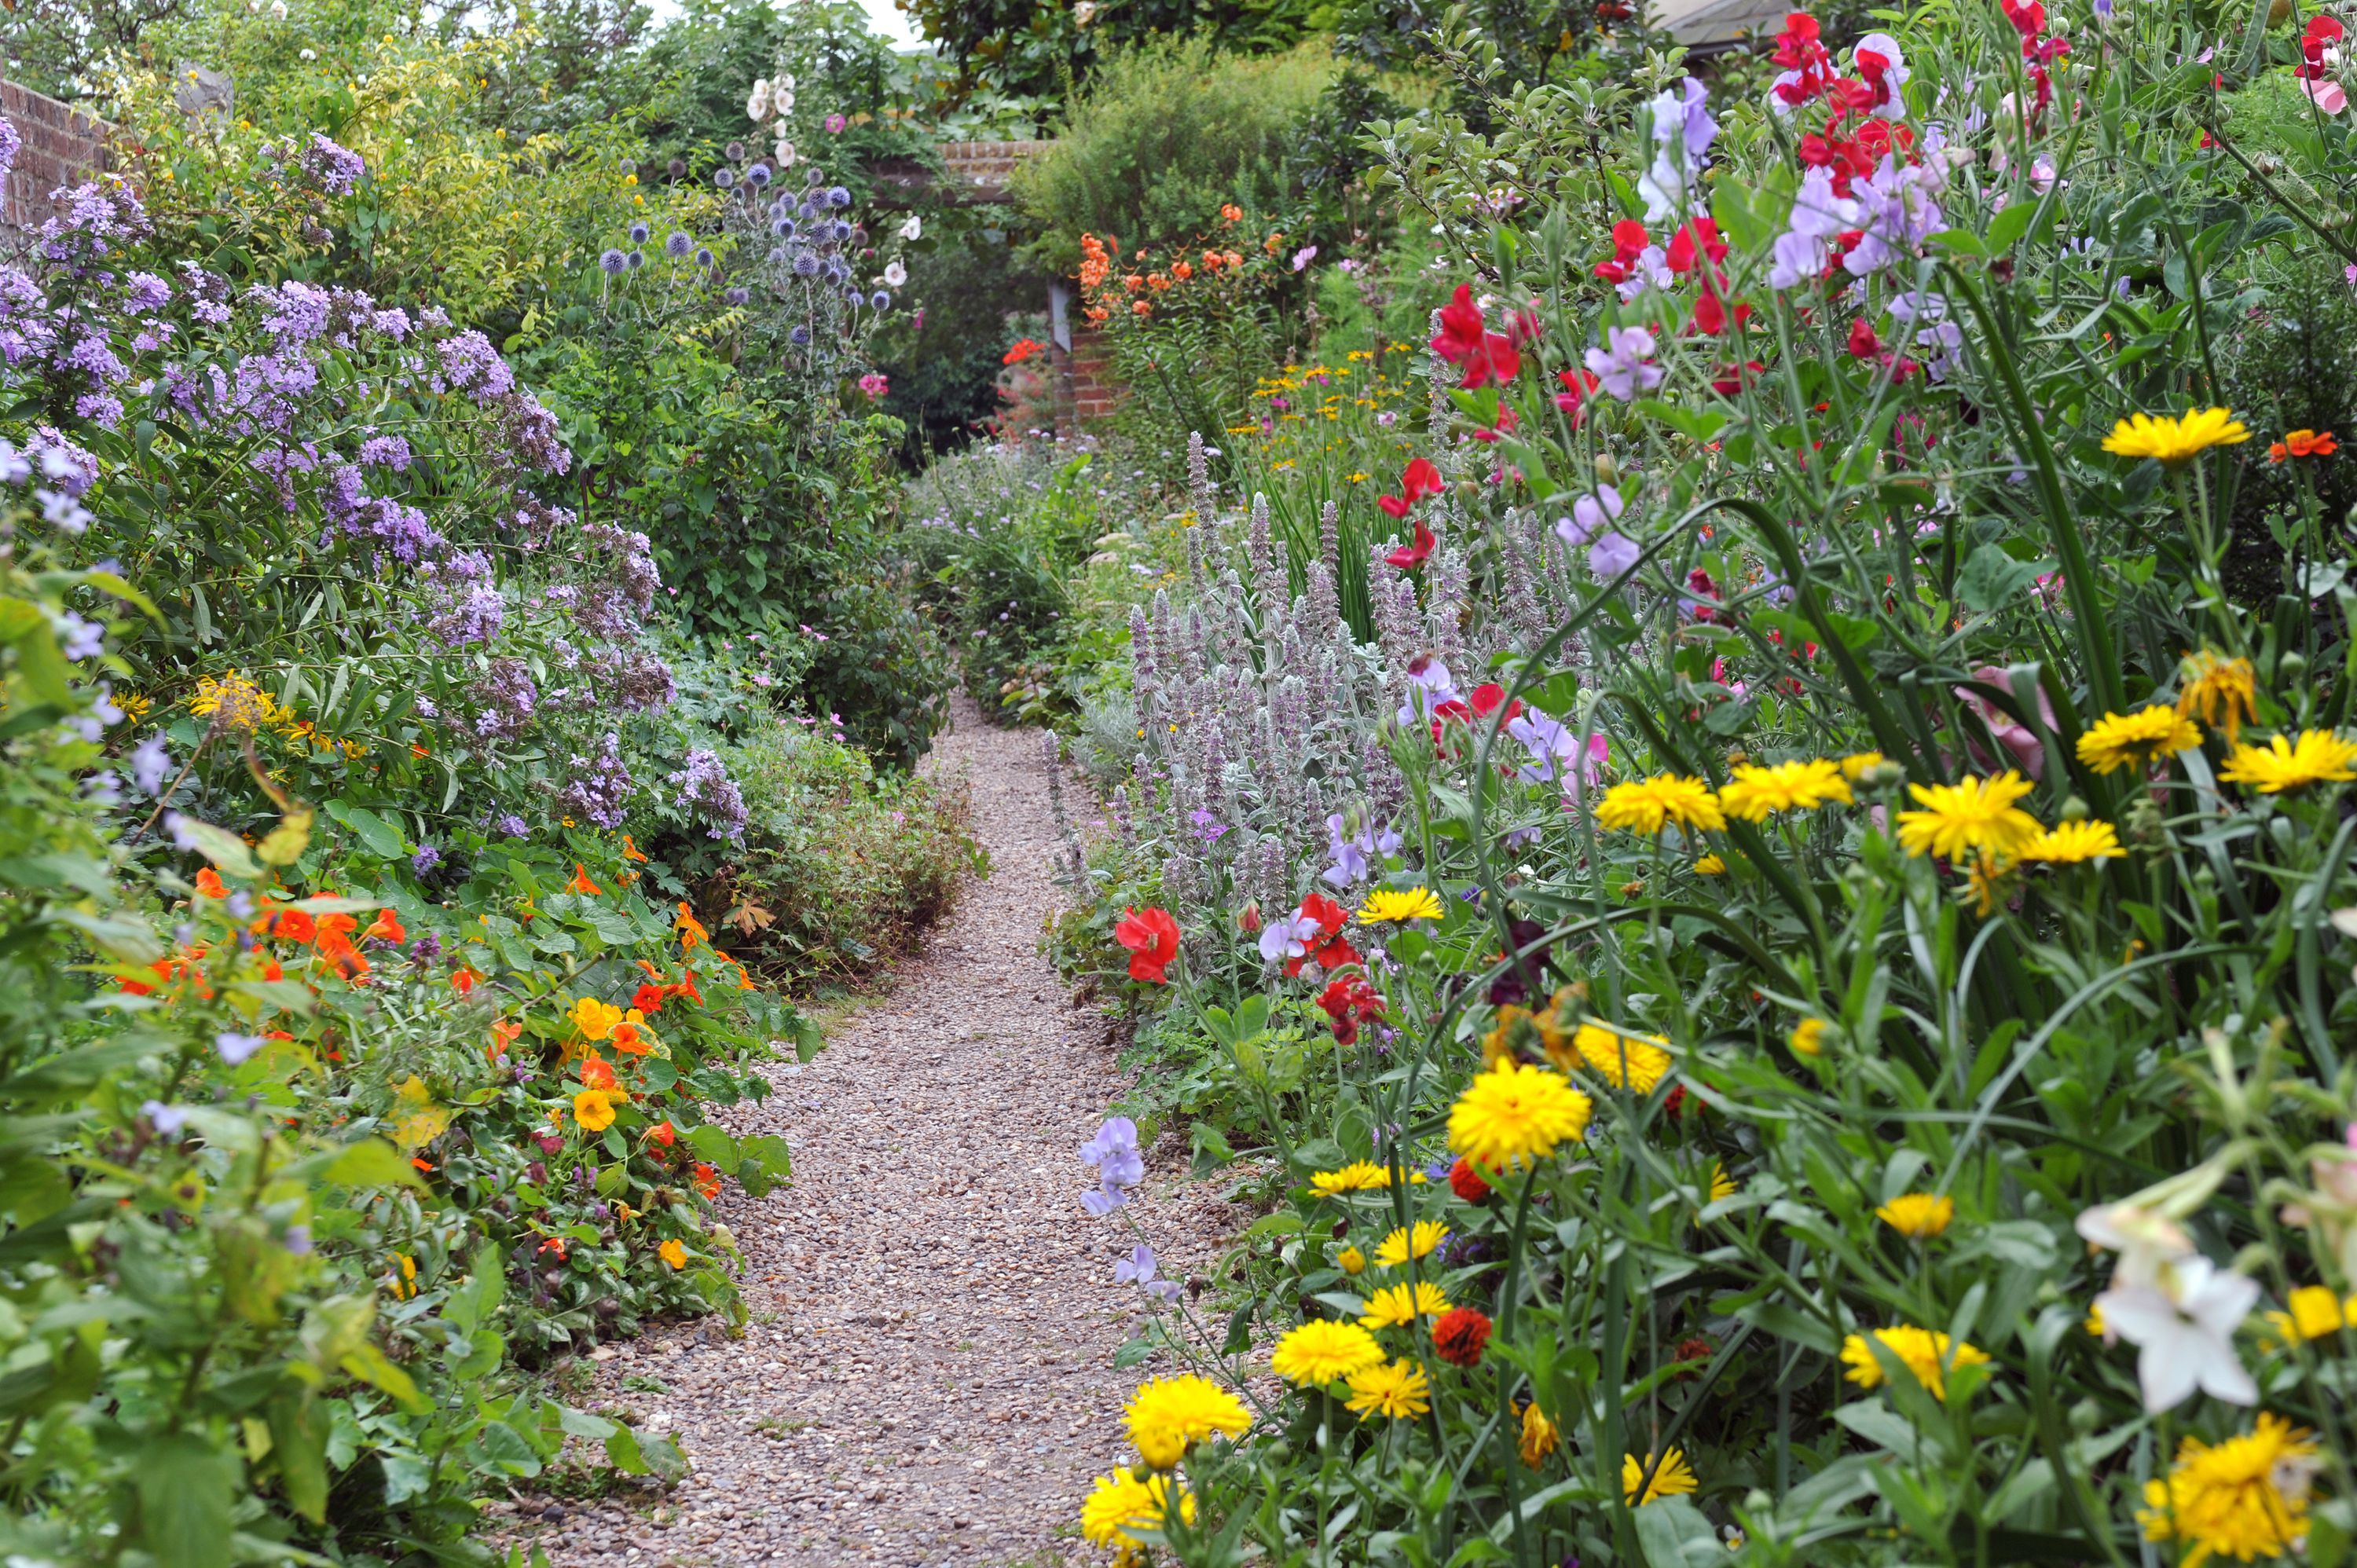 25 best full sun perennials - plants & flowers for sunny gardens